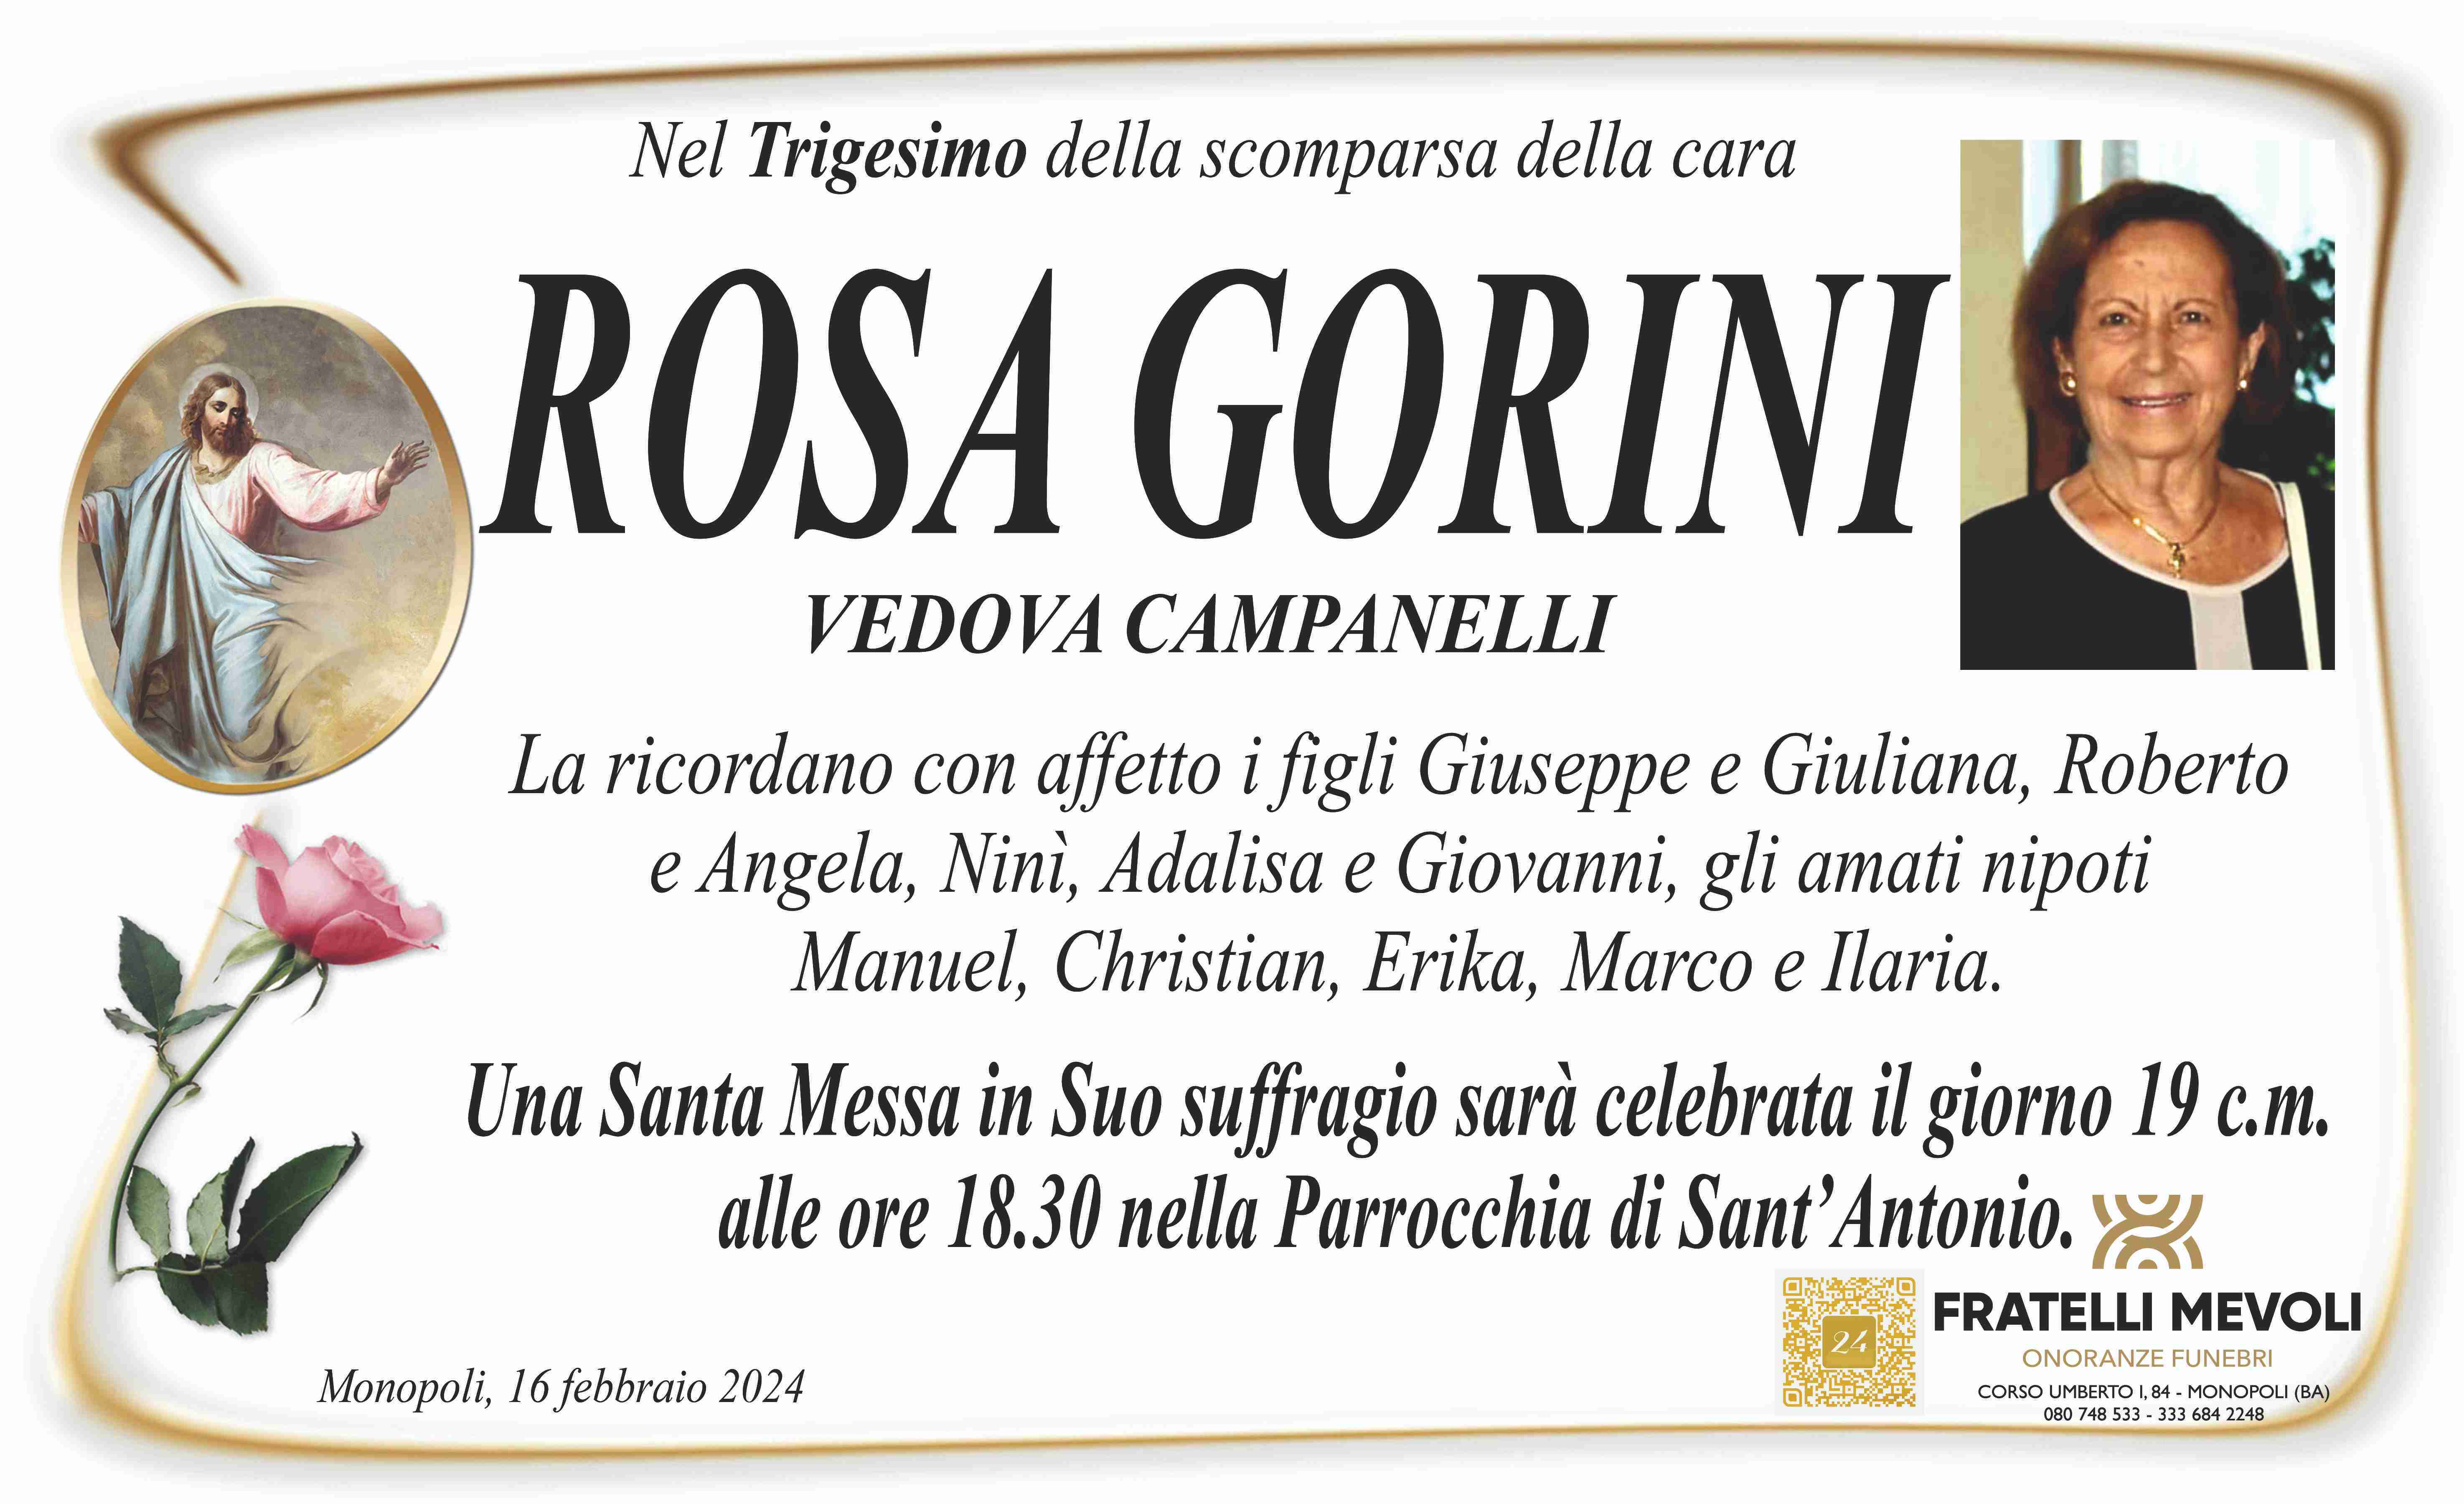 Rosa Gorini